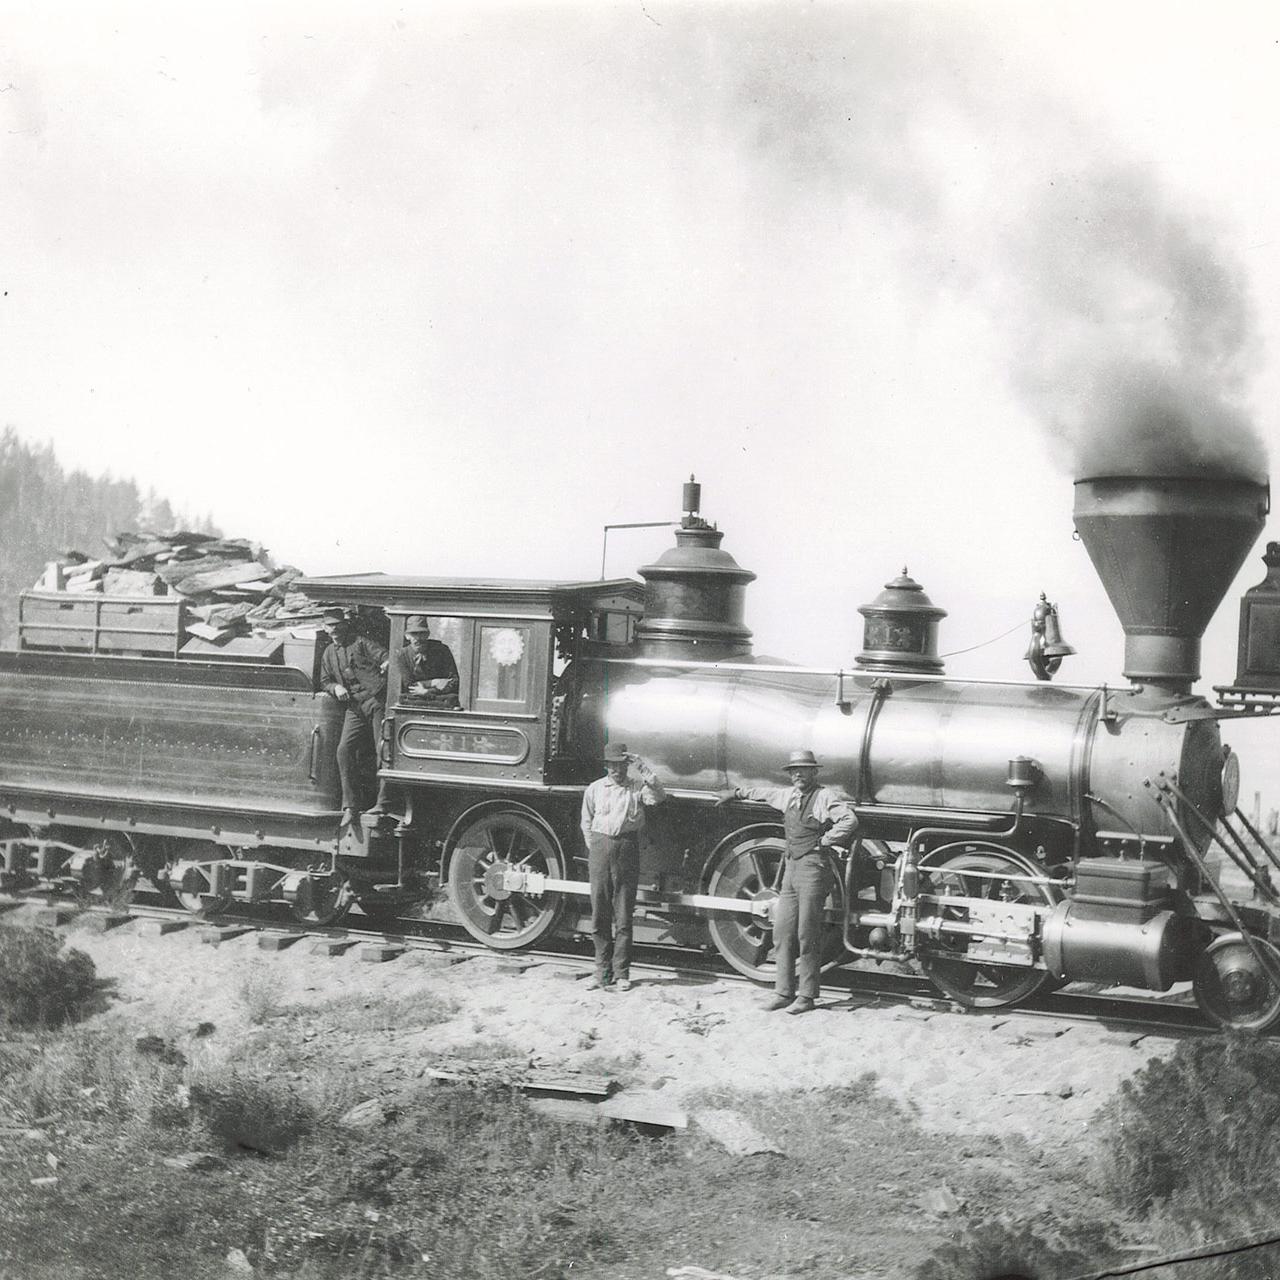 #1 "Glenbrook" in 1882